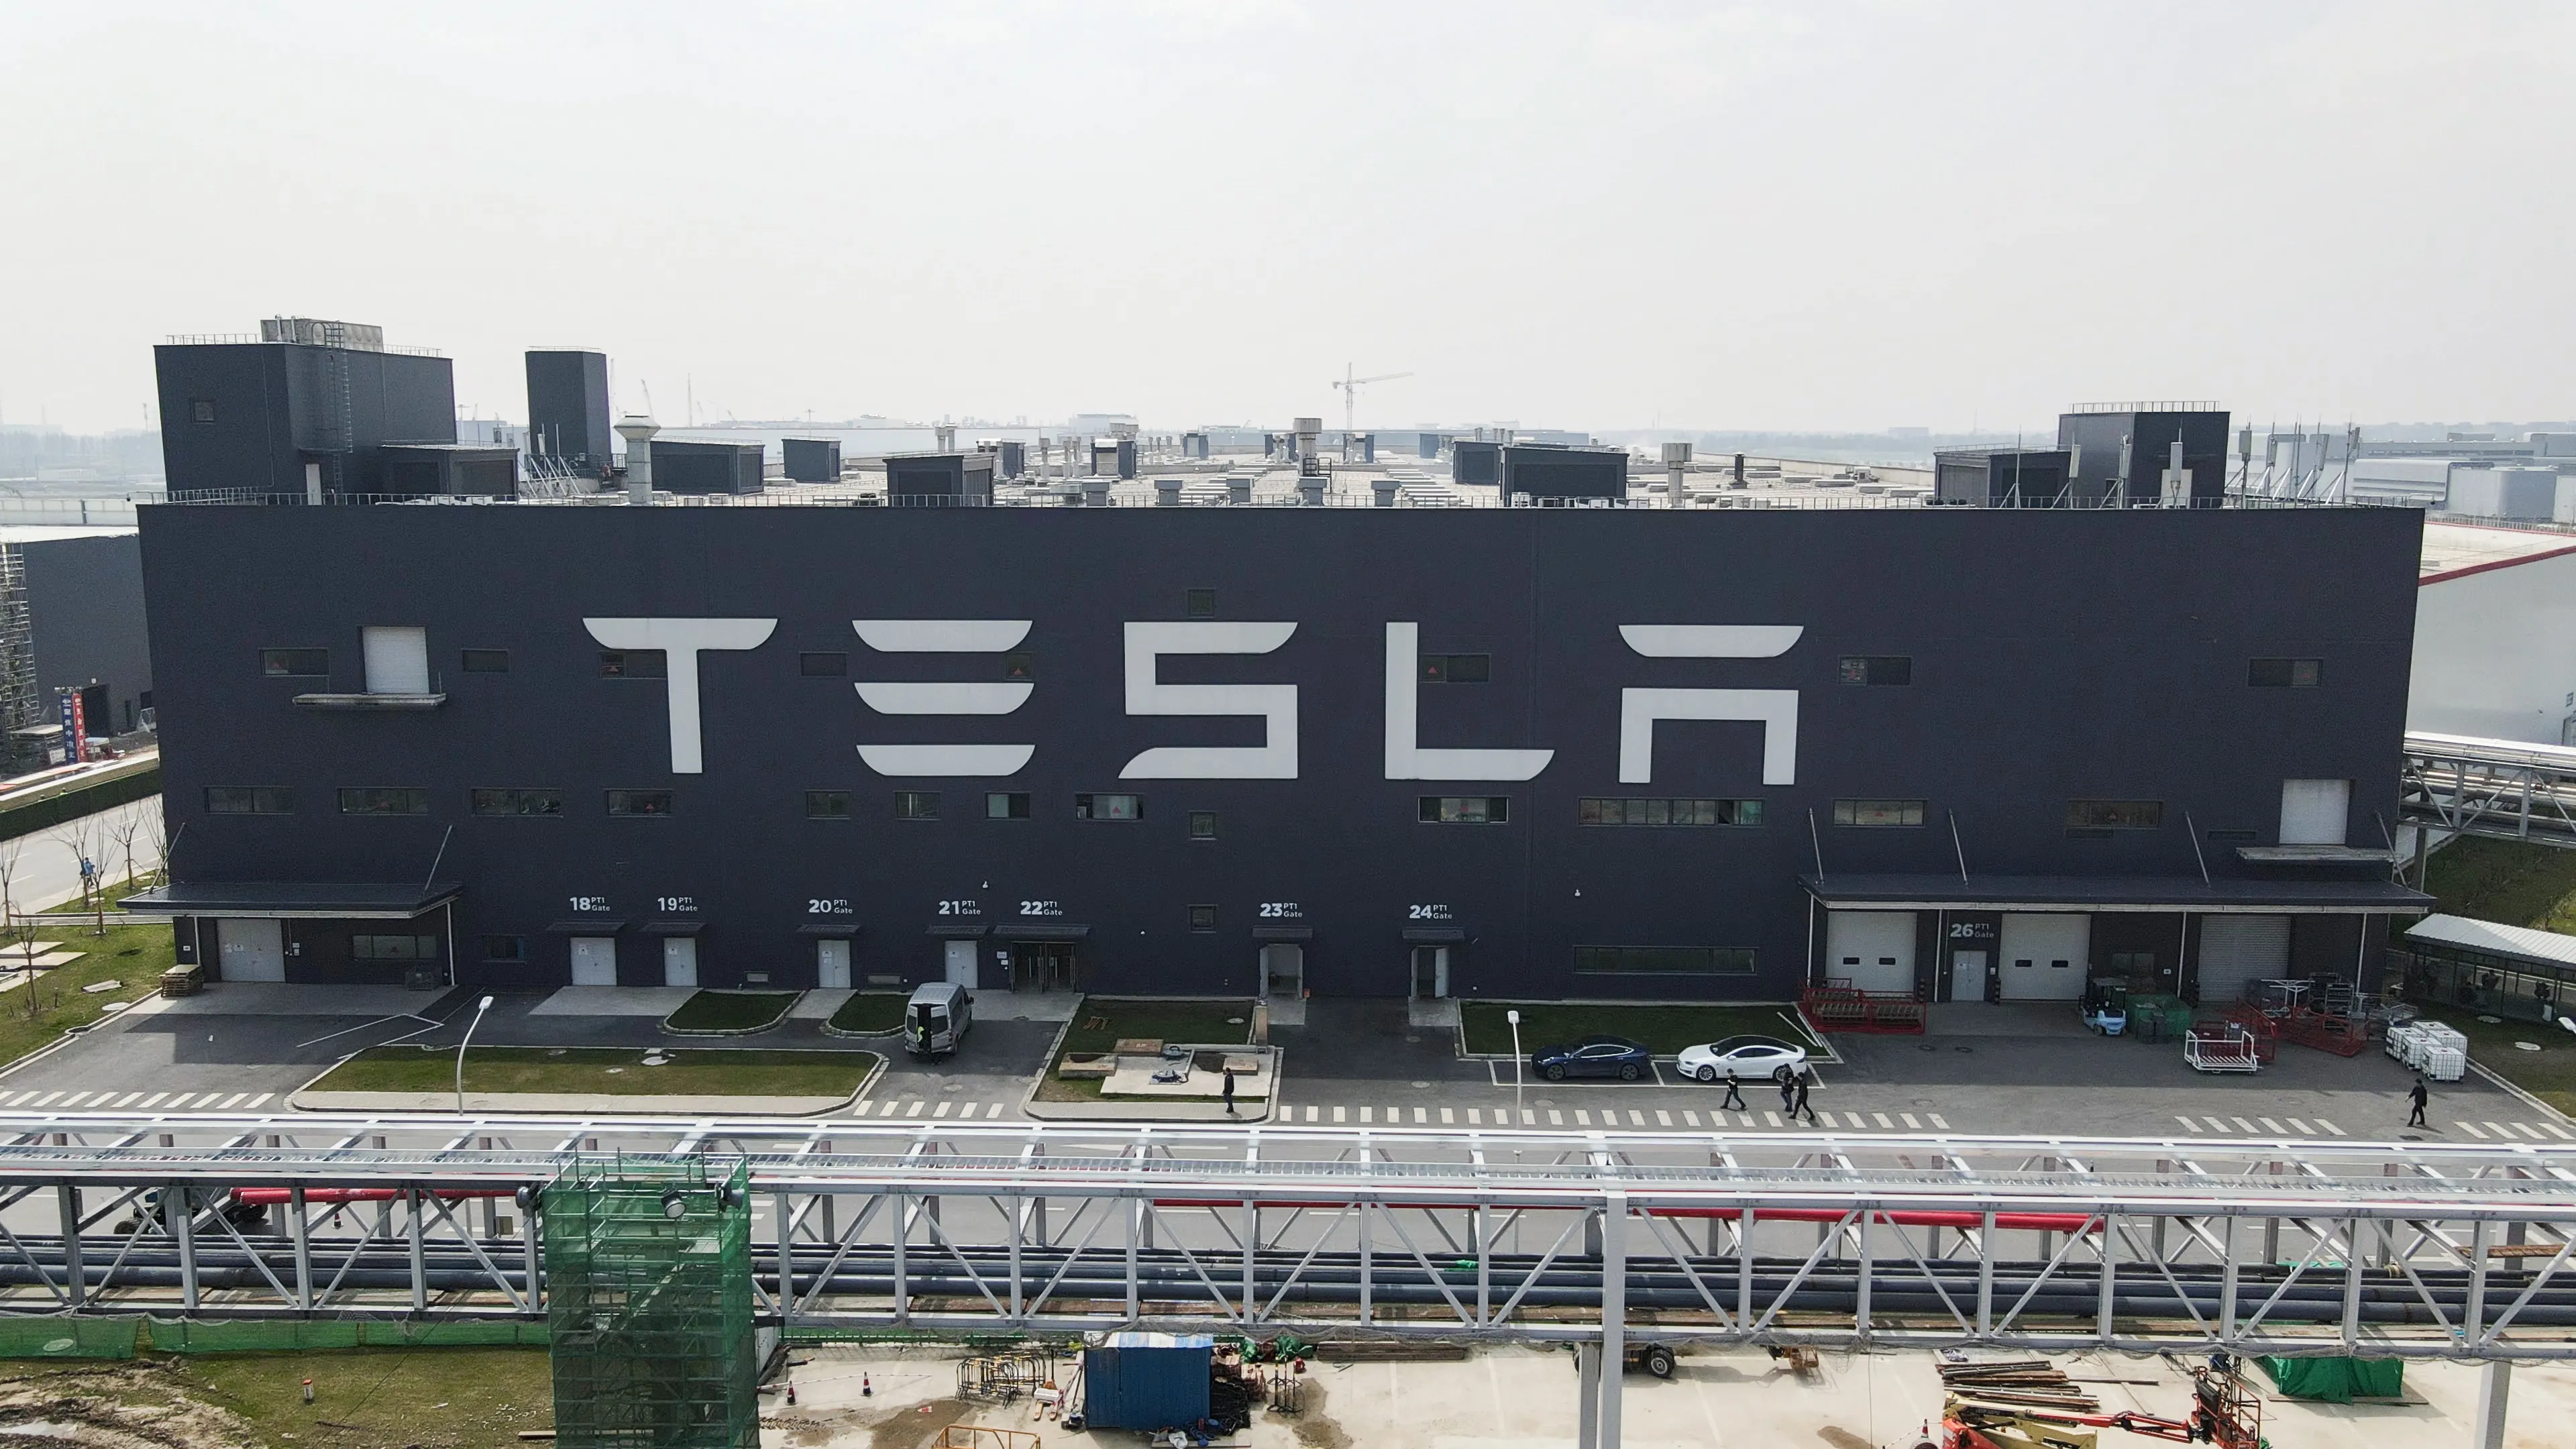 Szanghajska fabryka Tesli wznowi produkcję samochodów w ograniczonej ilości